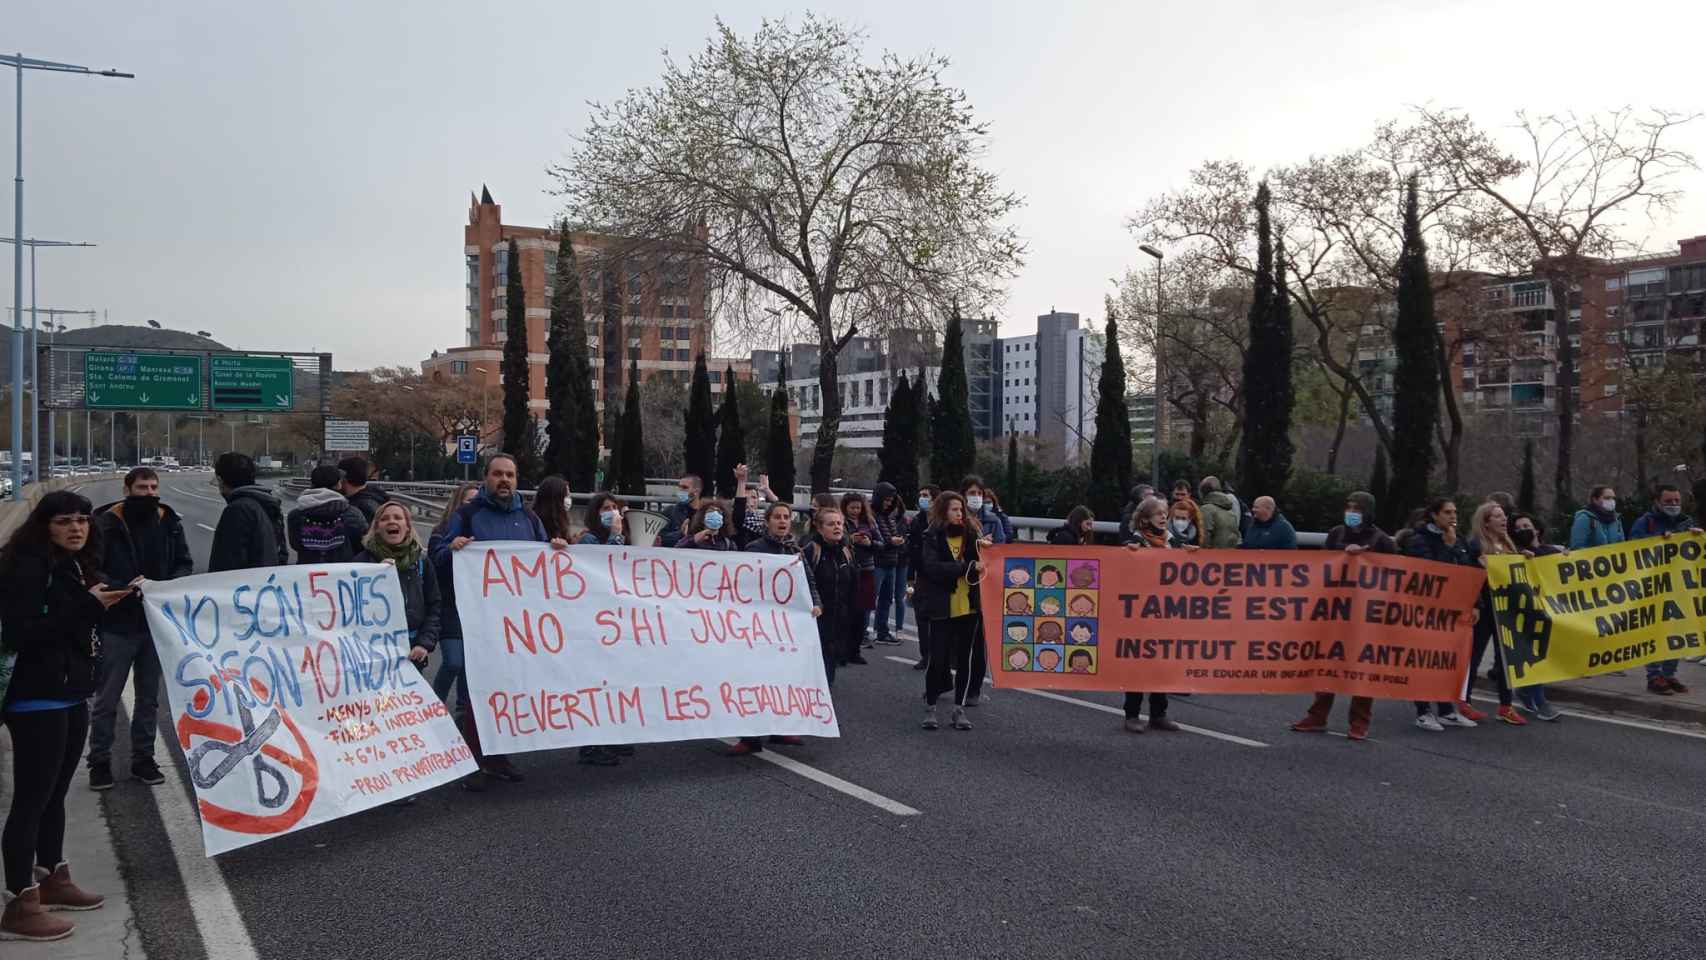 Corte de carretera en la ronda de Dalt este martes durante la huelga de profesores / USTEC